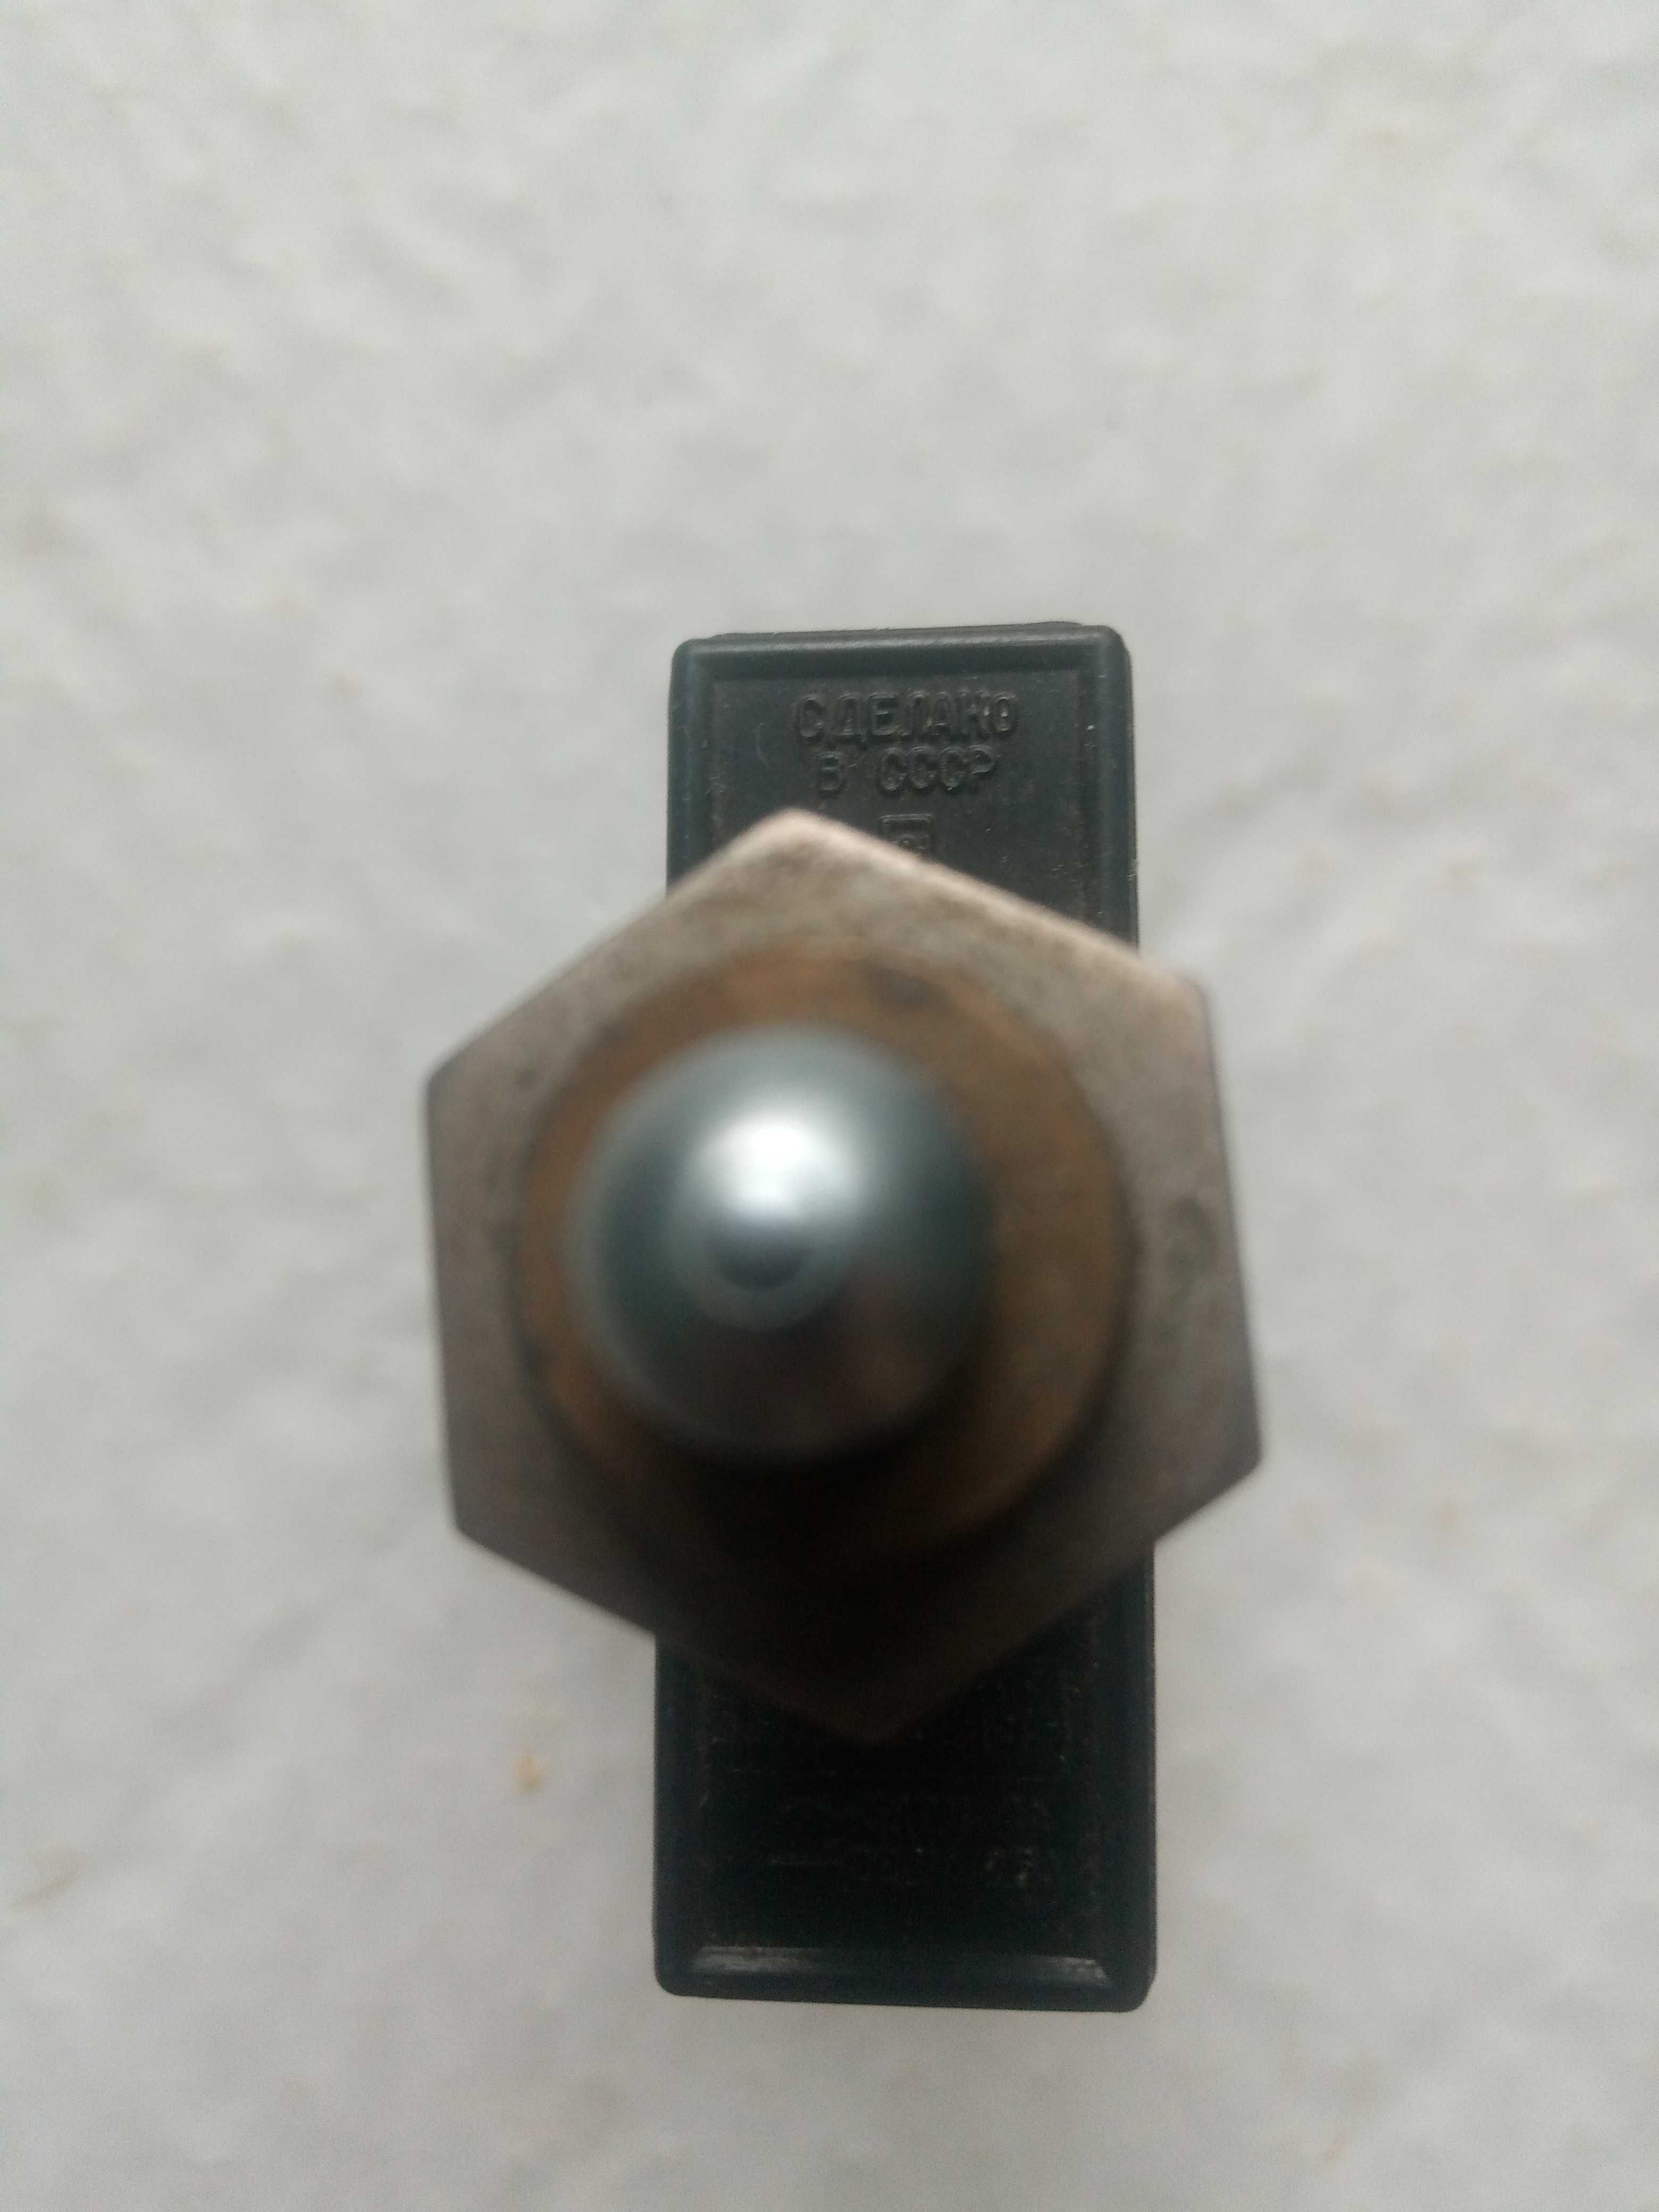 ПМЕ-072 Пускатель магнитний, Переключат мп 1104у4, ав12м Кнопка КЕ 011